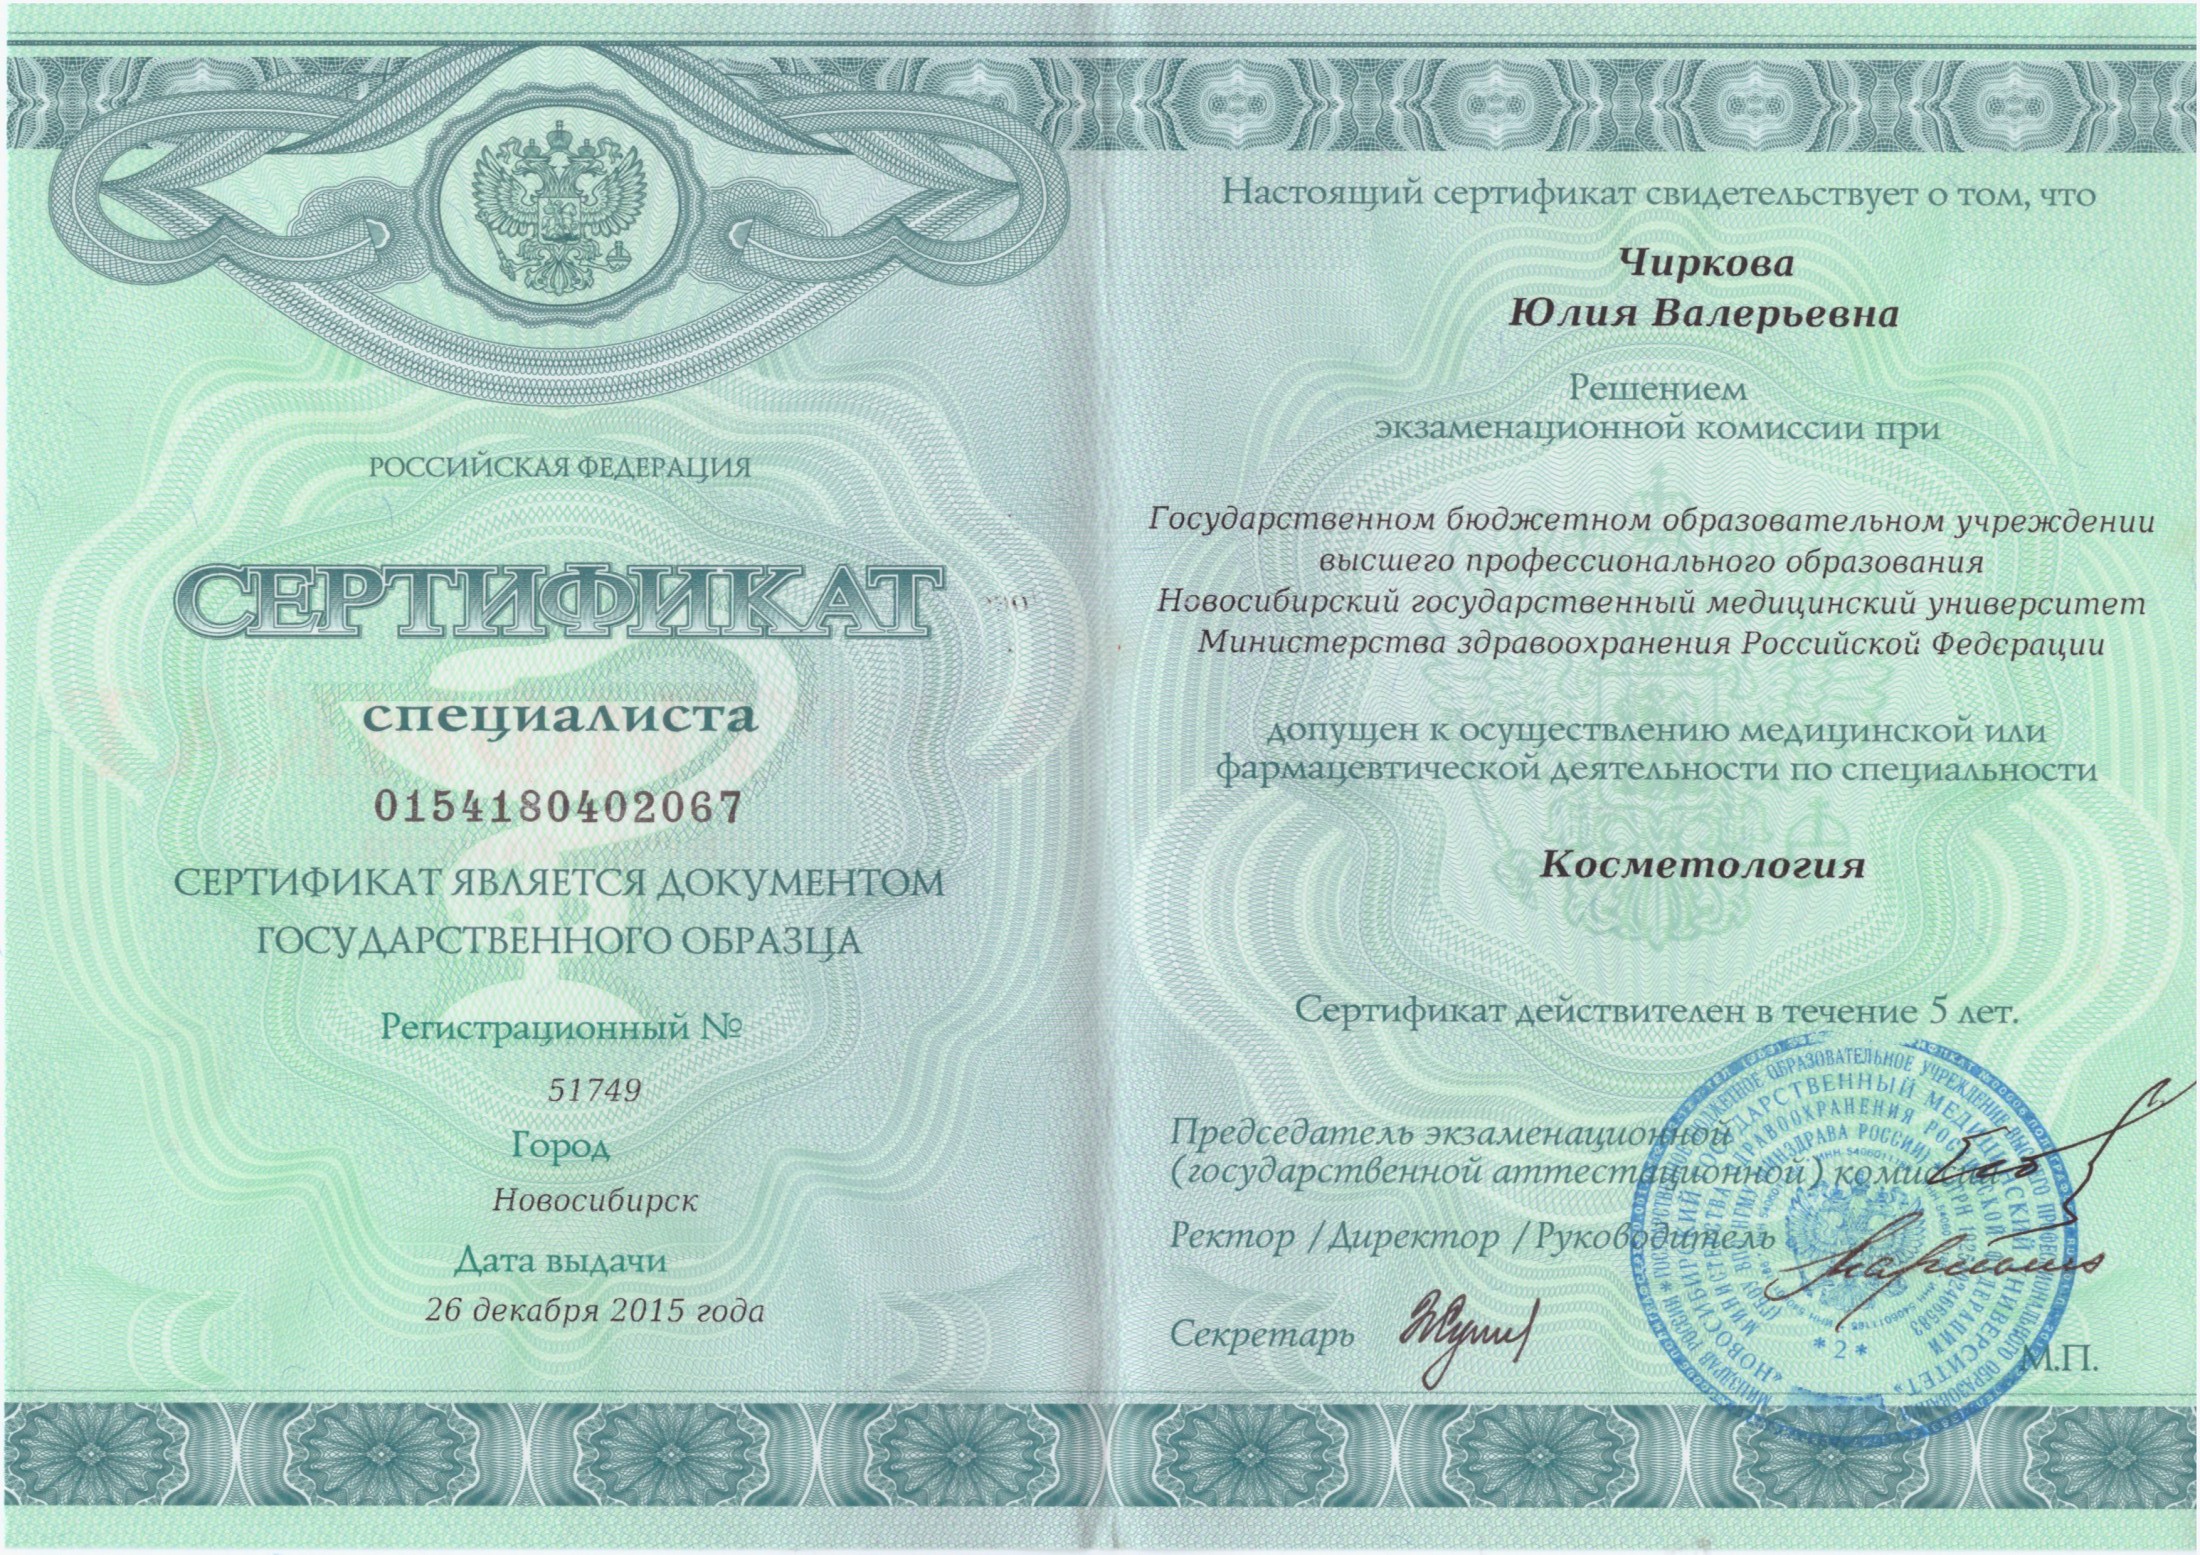 Сертификат Чирковой 